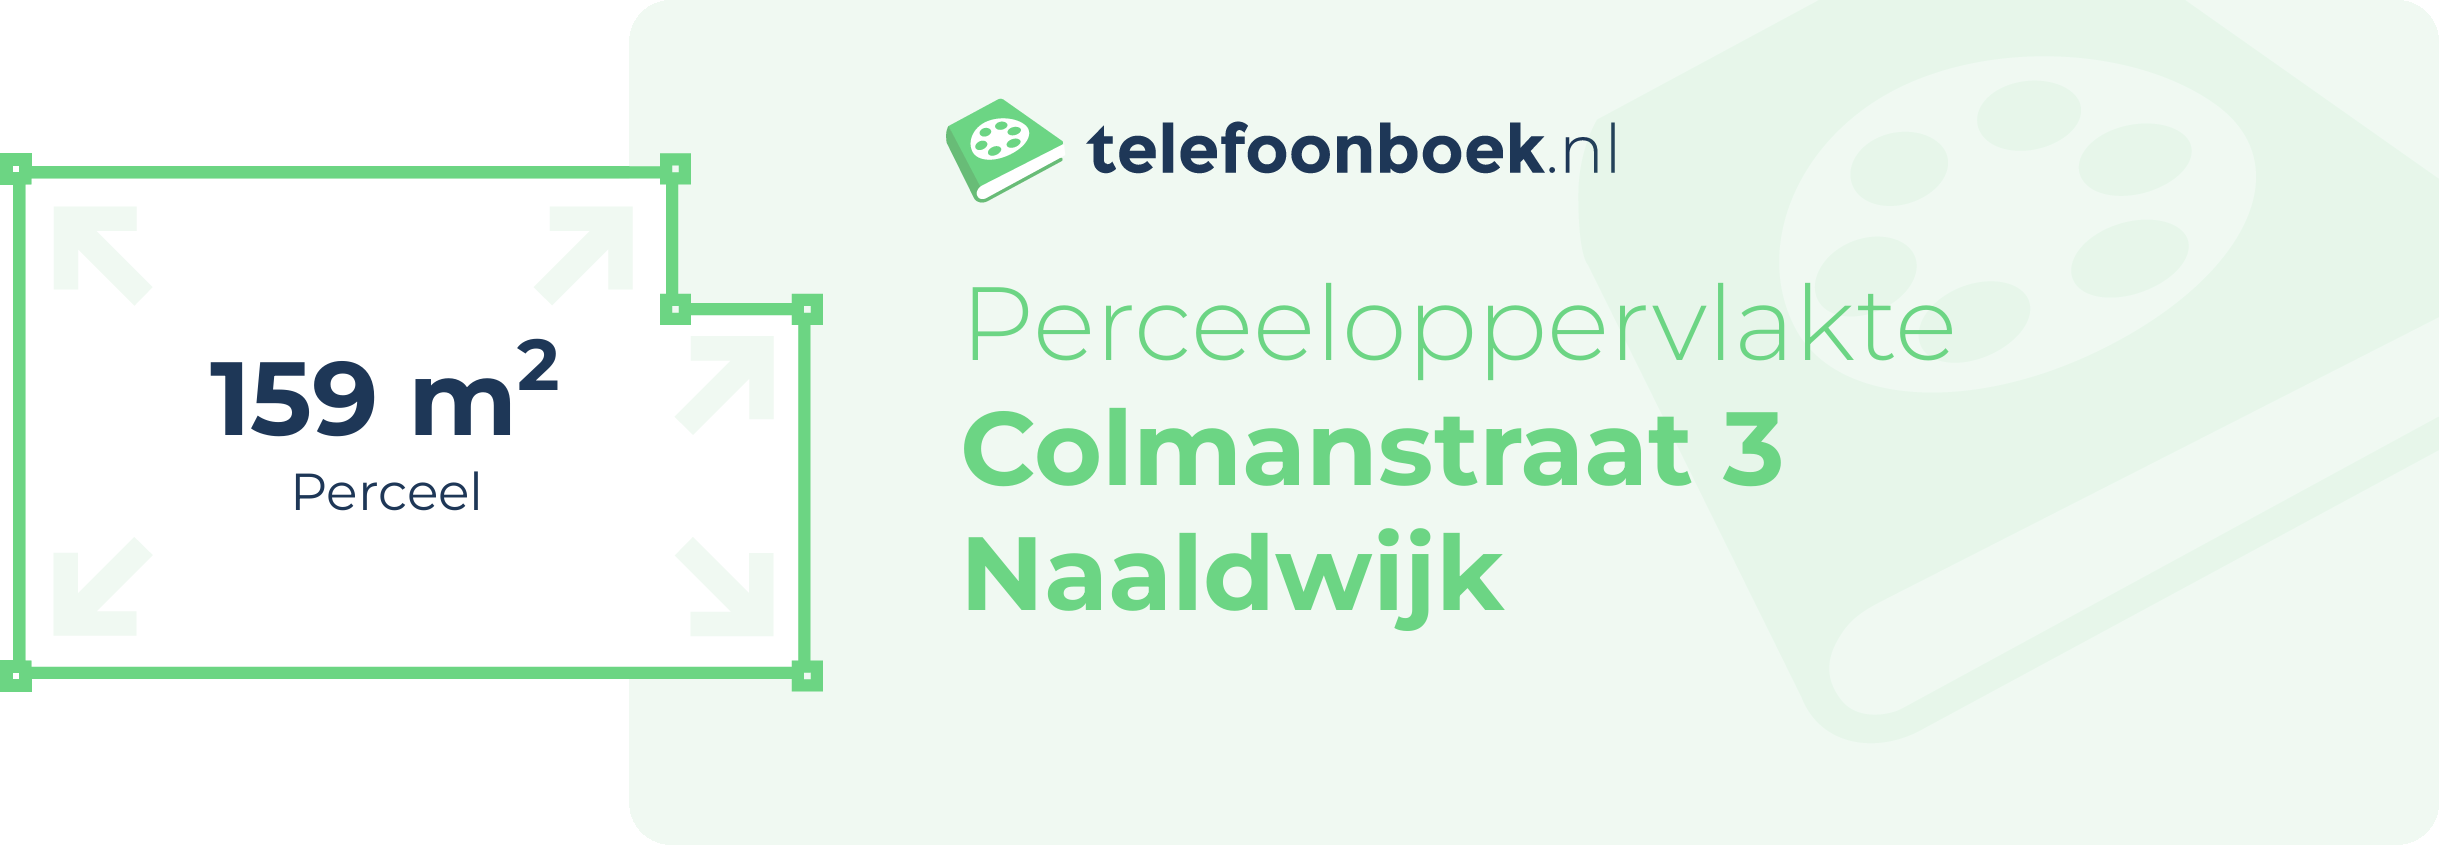 Perceeloppervlakte Colmanstraat 3 Naaldwijk